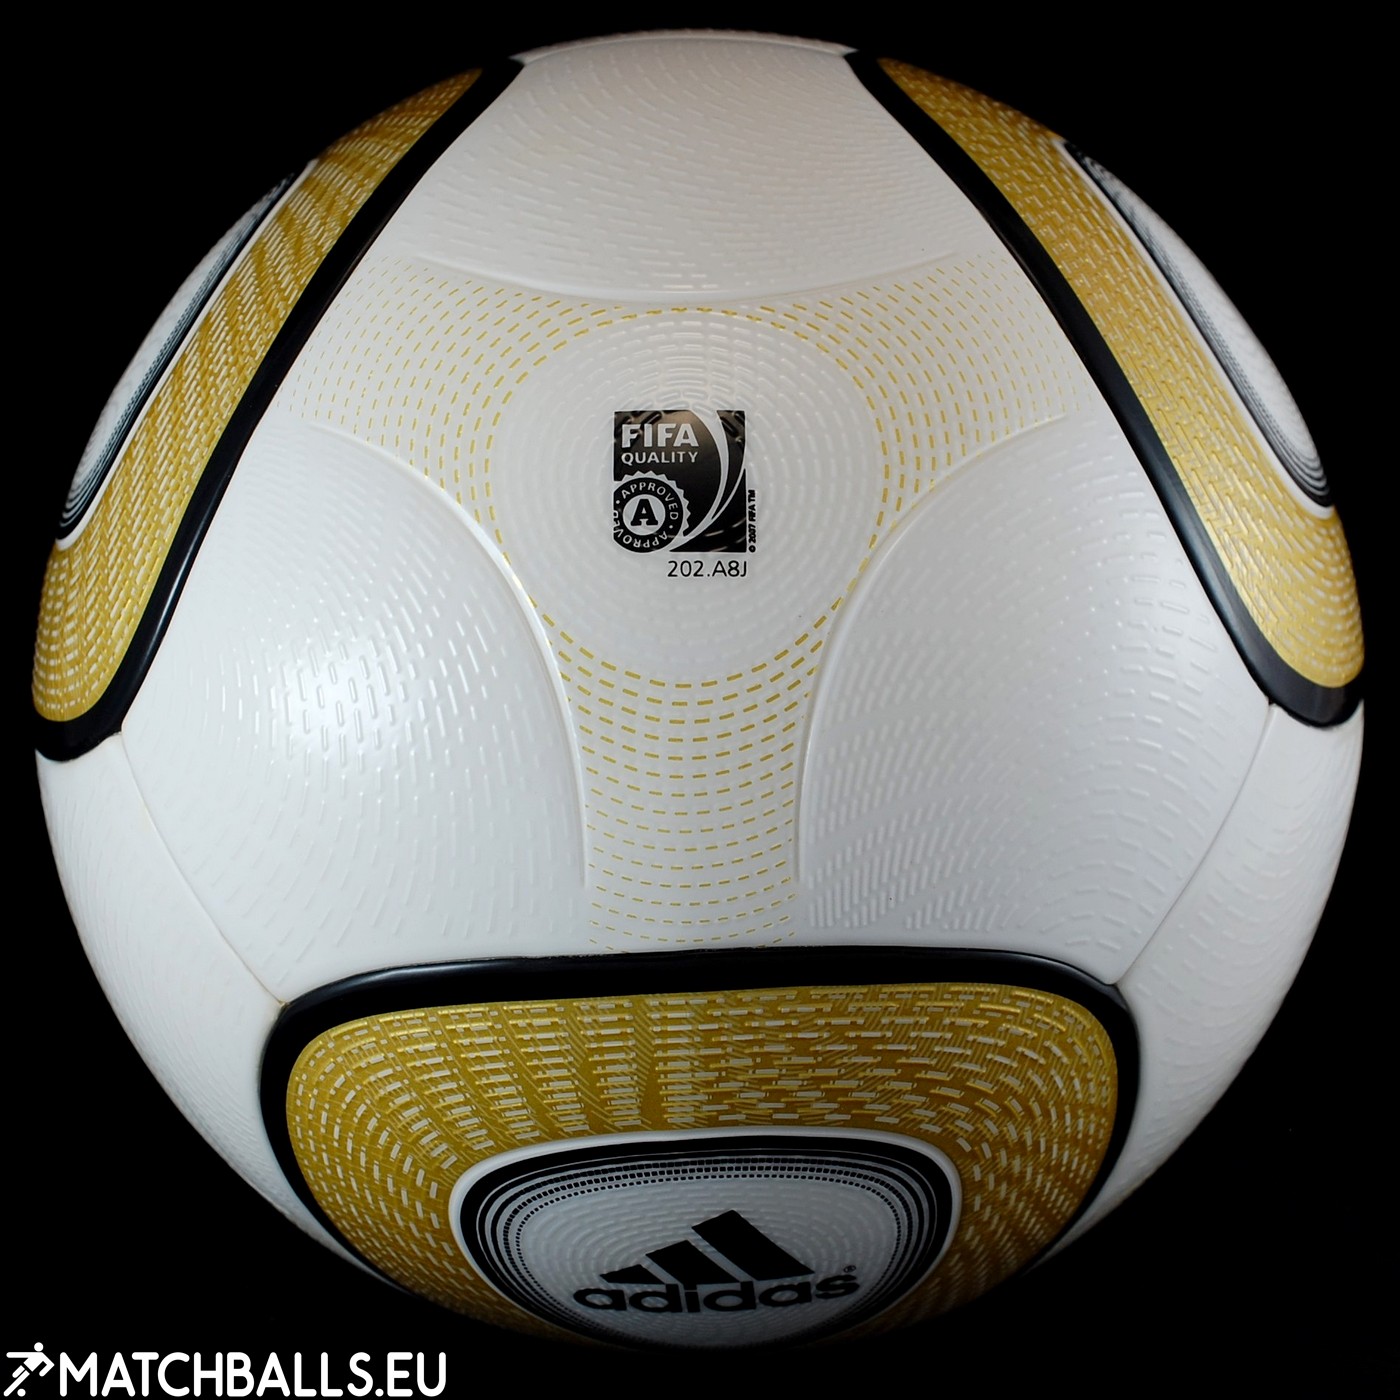 Adidas Jabulani Ball - Final Match (OMB) | matchballs.eu